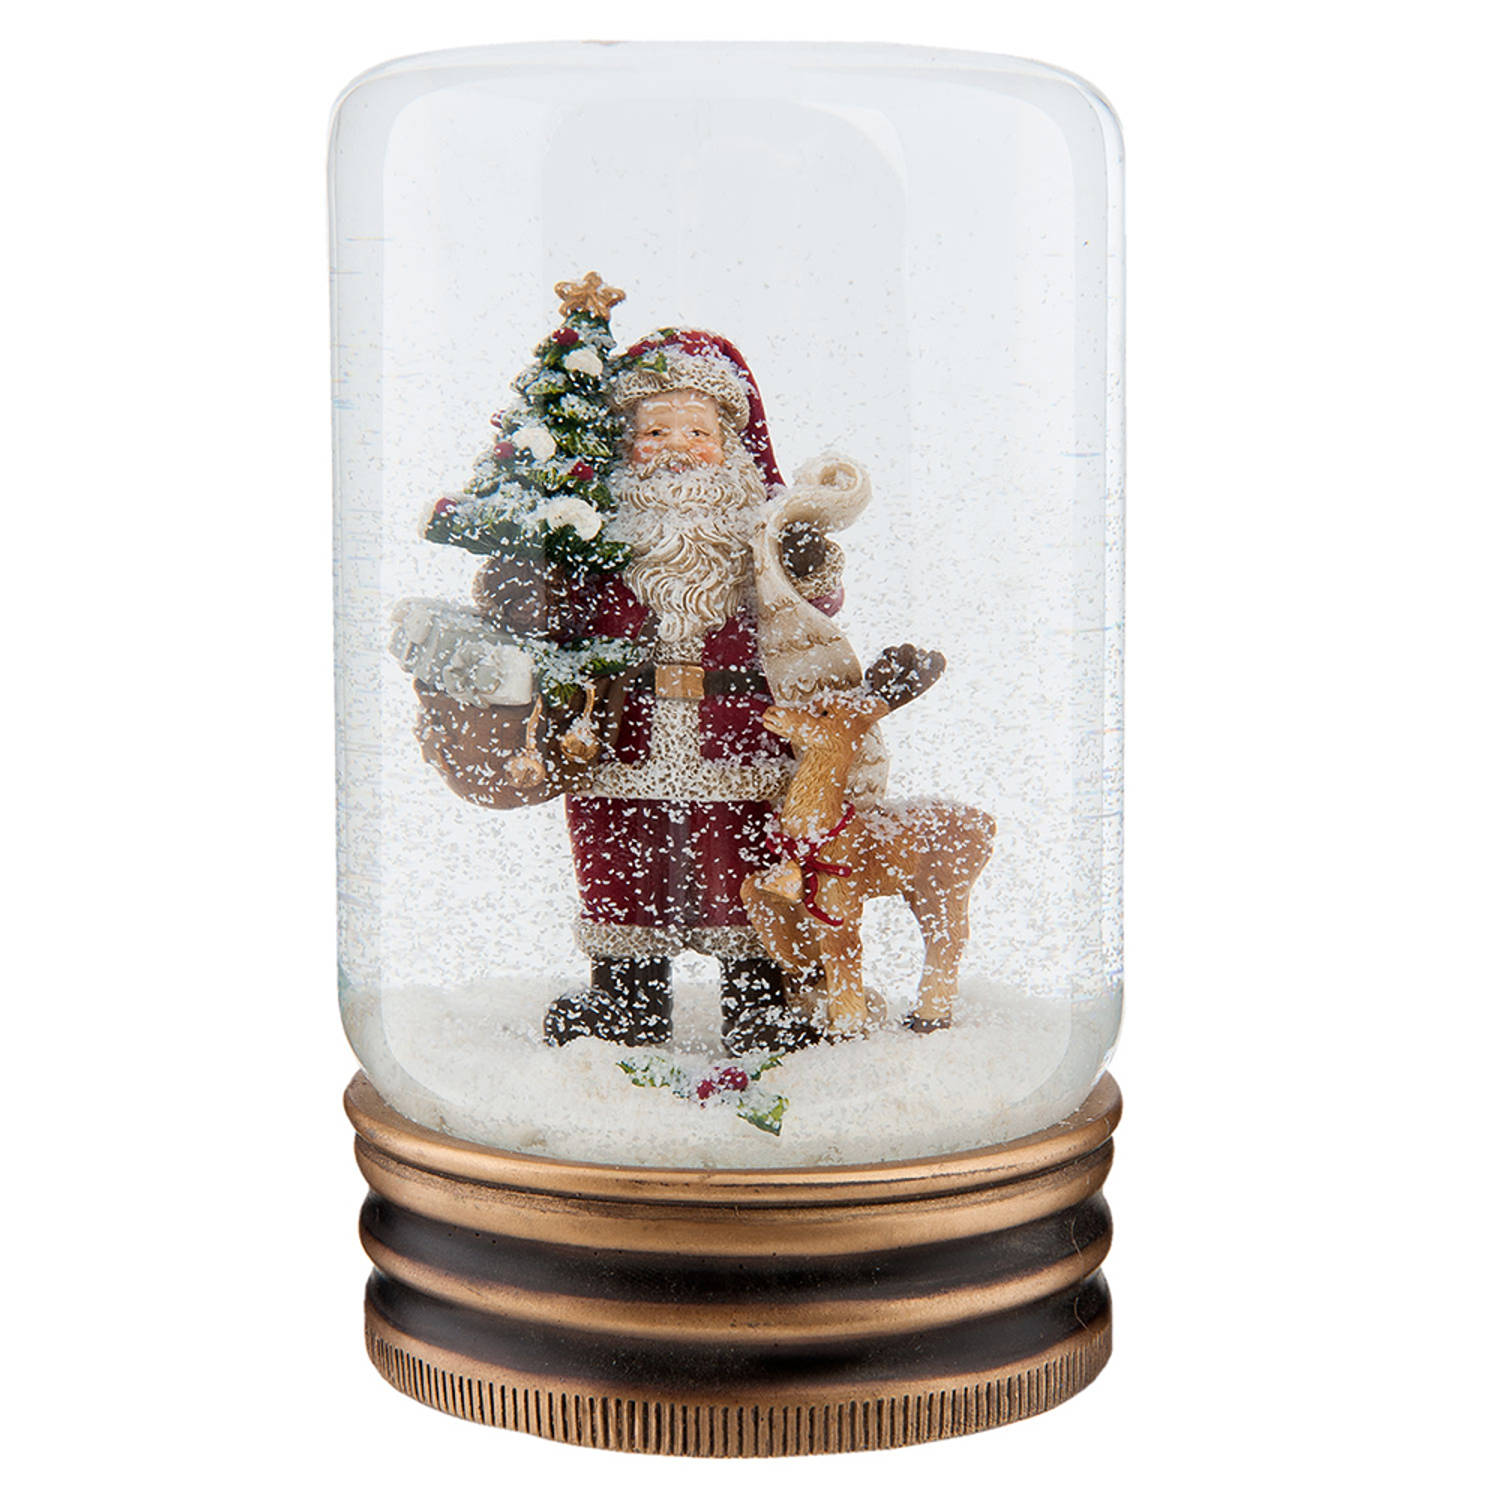 HAES DECO - Sneeuwbol met Kerstman - Formaat Ø 5x9 cm - Kleur Rood - Materiaal Glas / Polyresin - Kerst Figuur, Kerstdecoratie, Schudbol